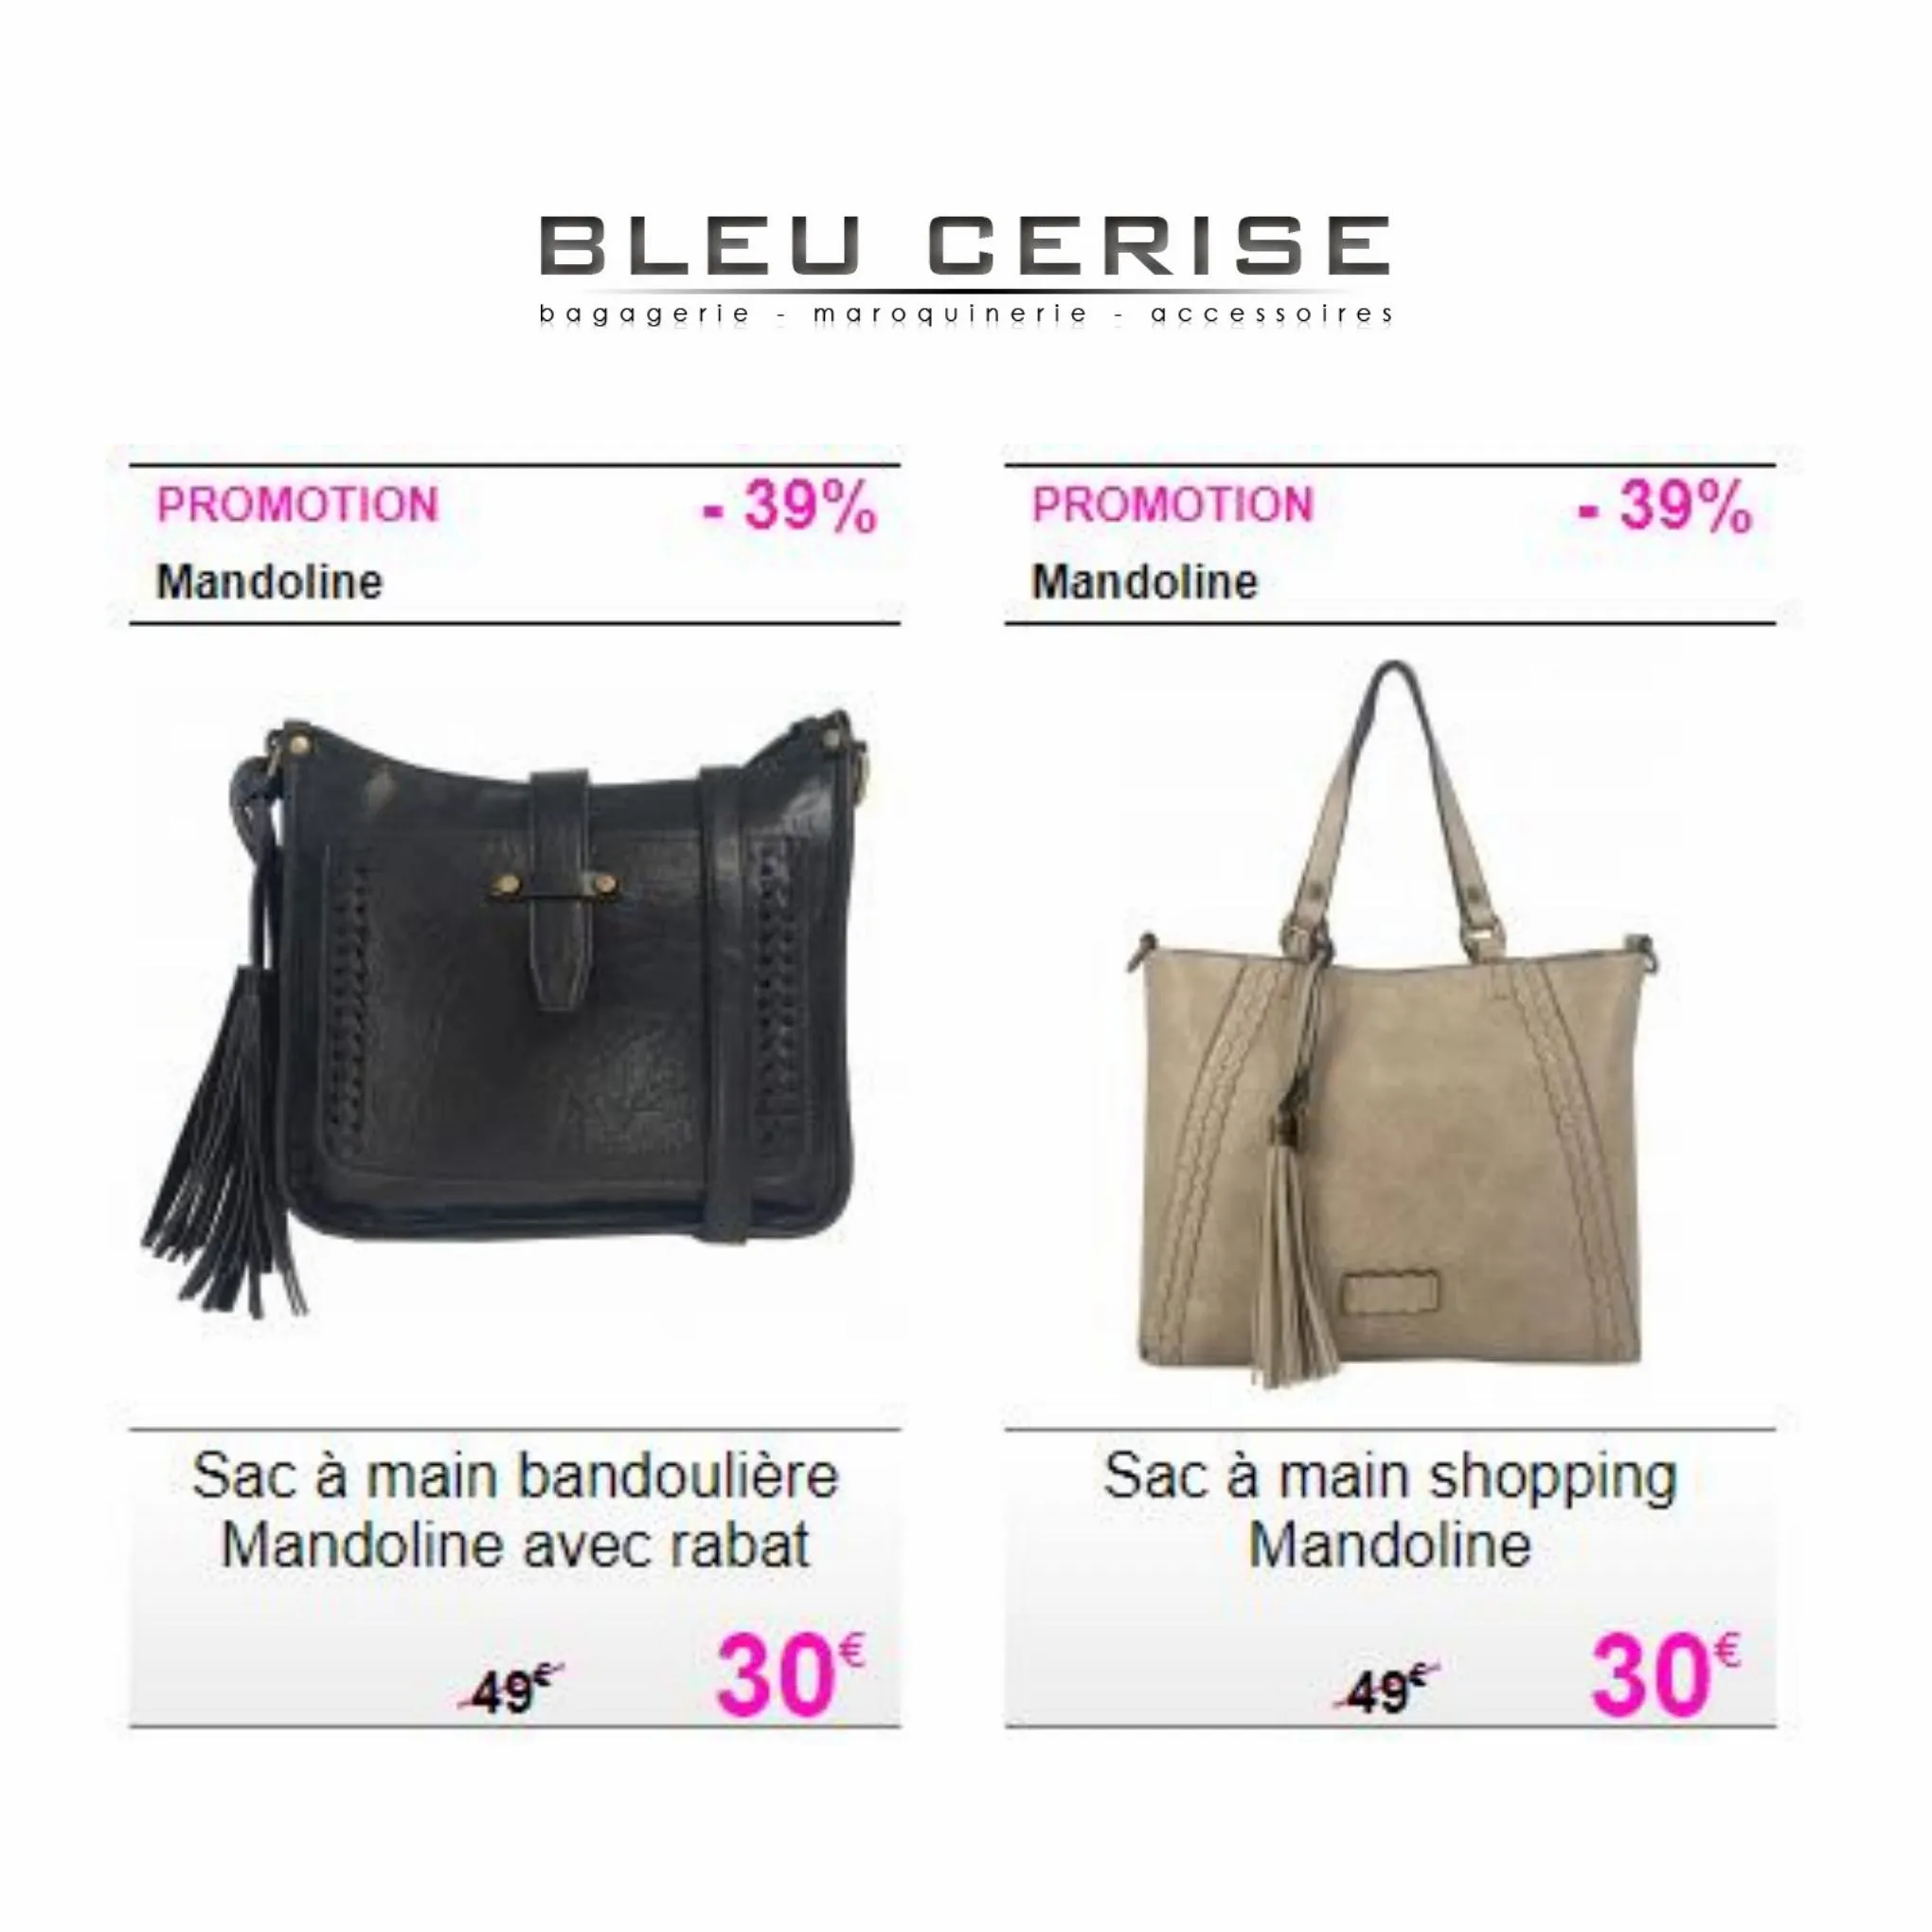 Catalogue Les meilleures offres sur les sacs pour femmes, page 00003